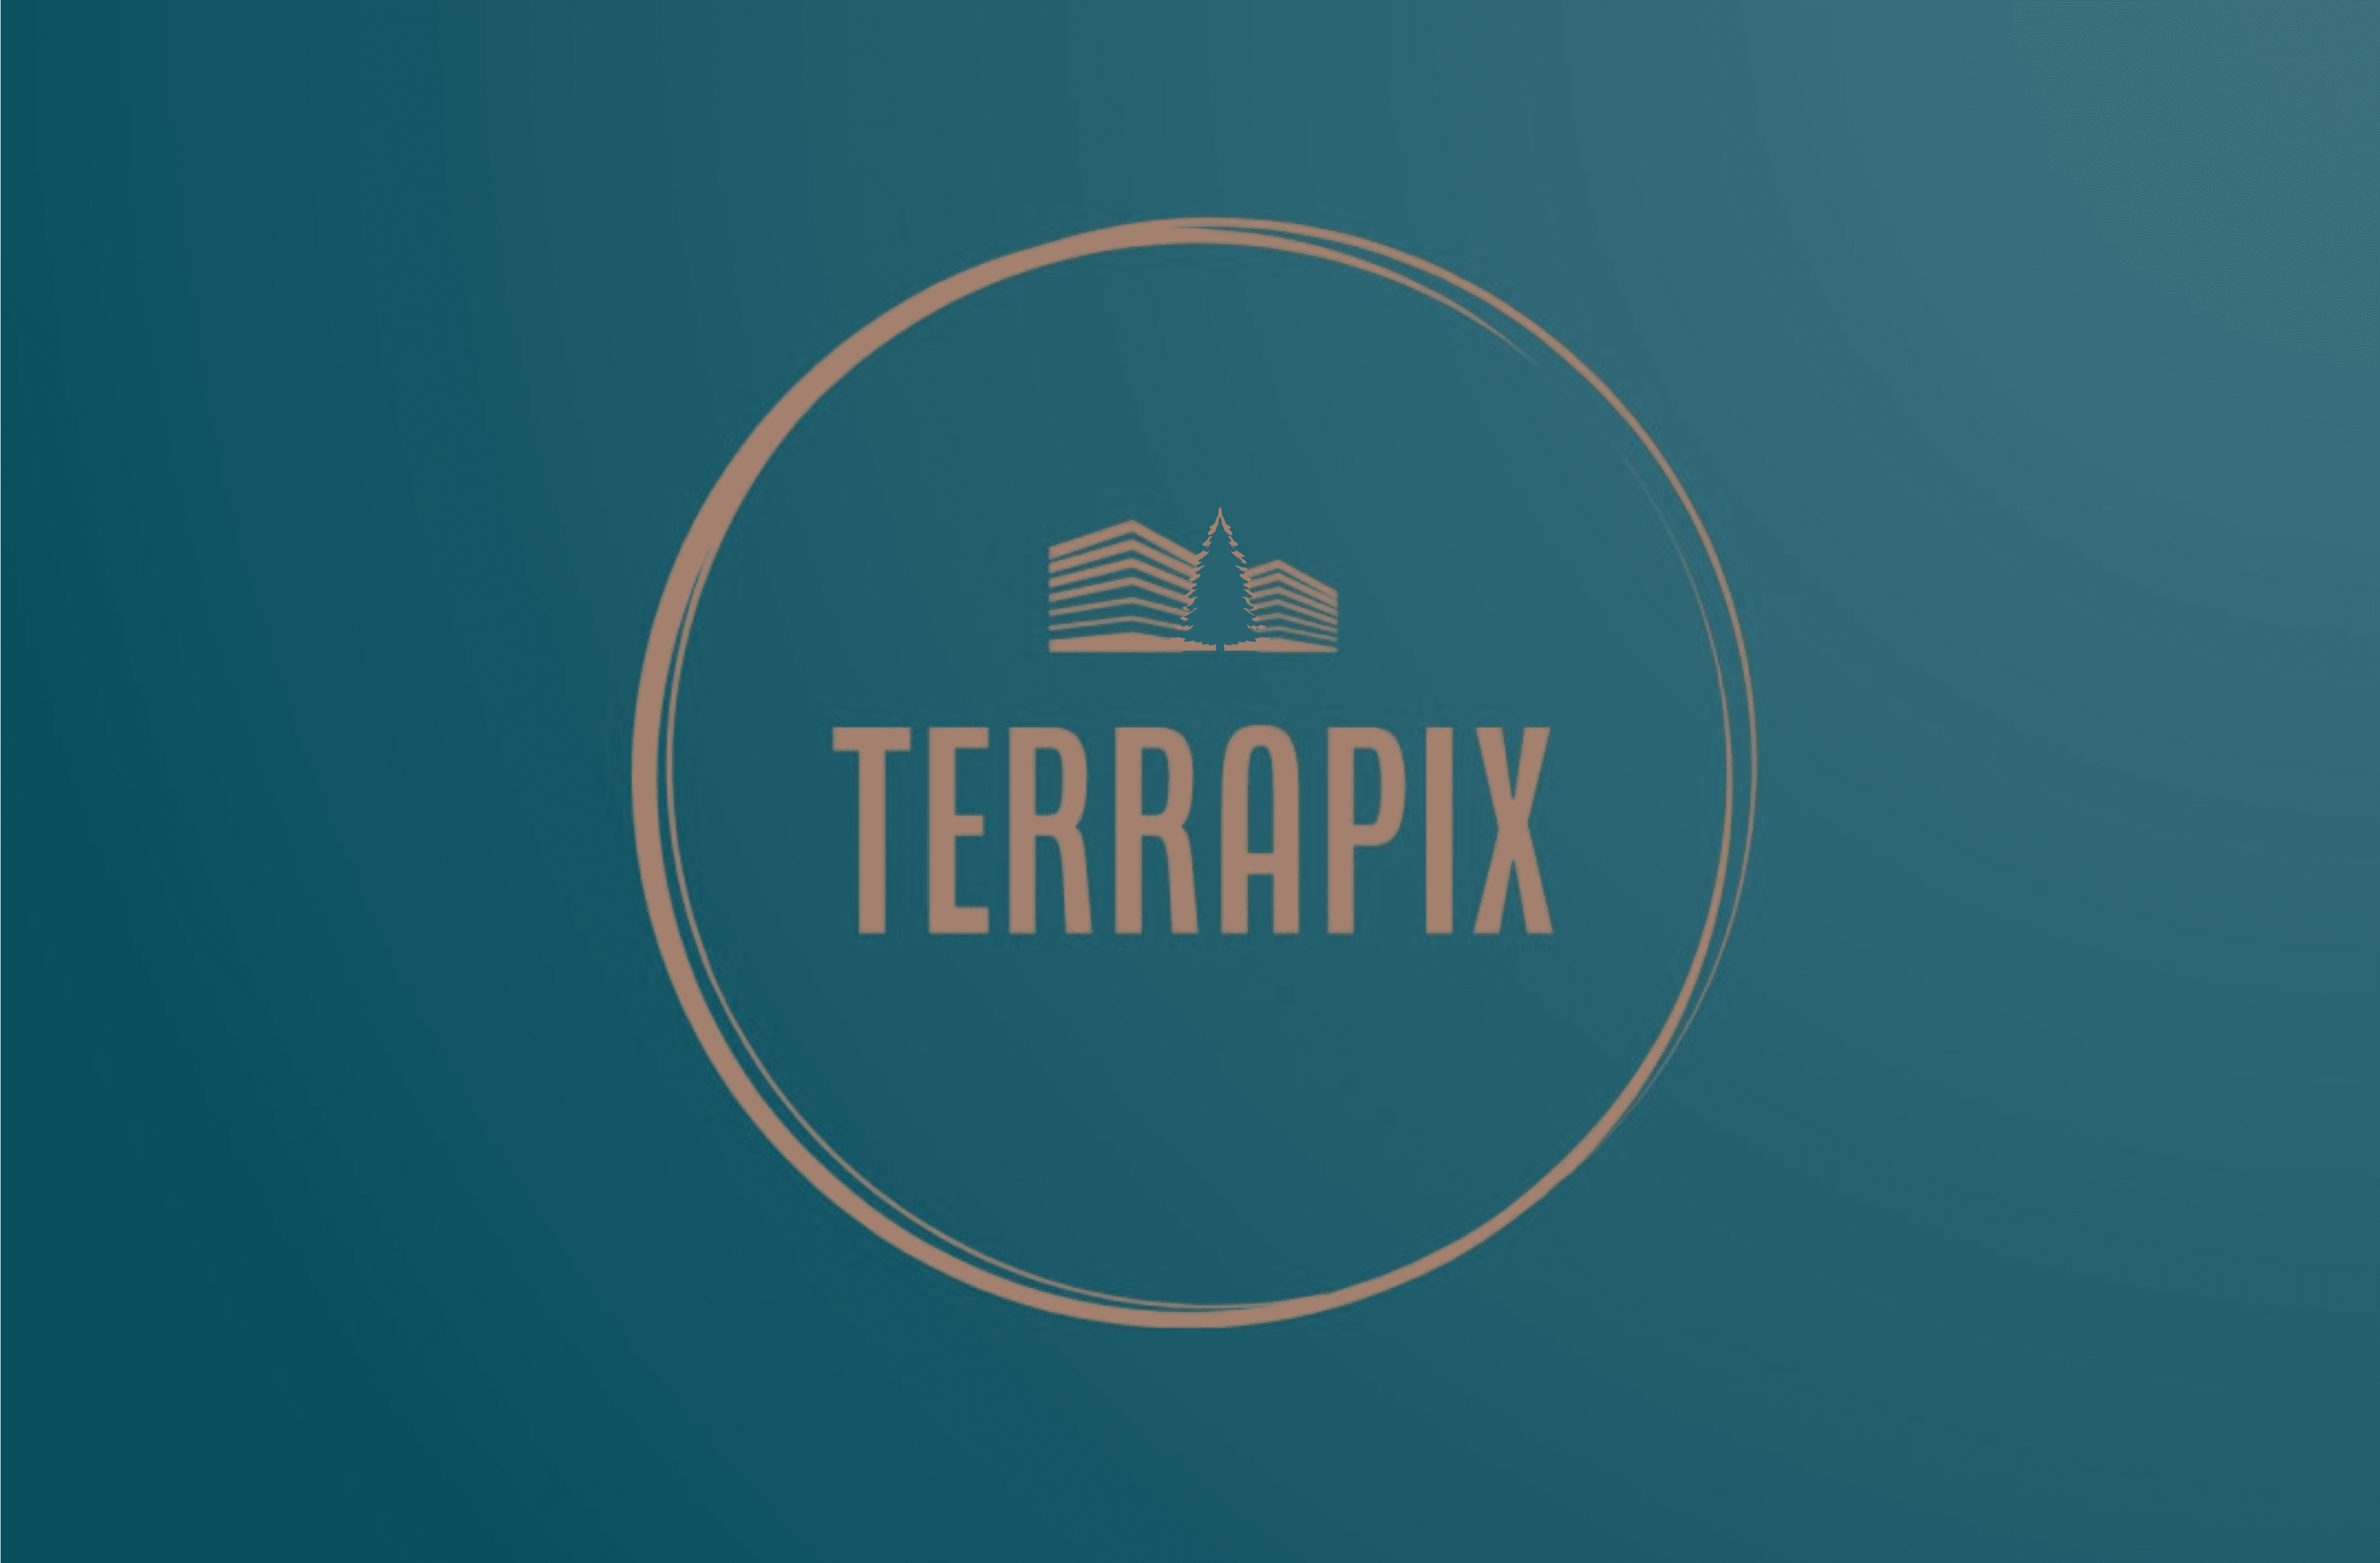 Terrapix